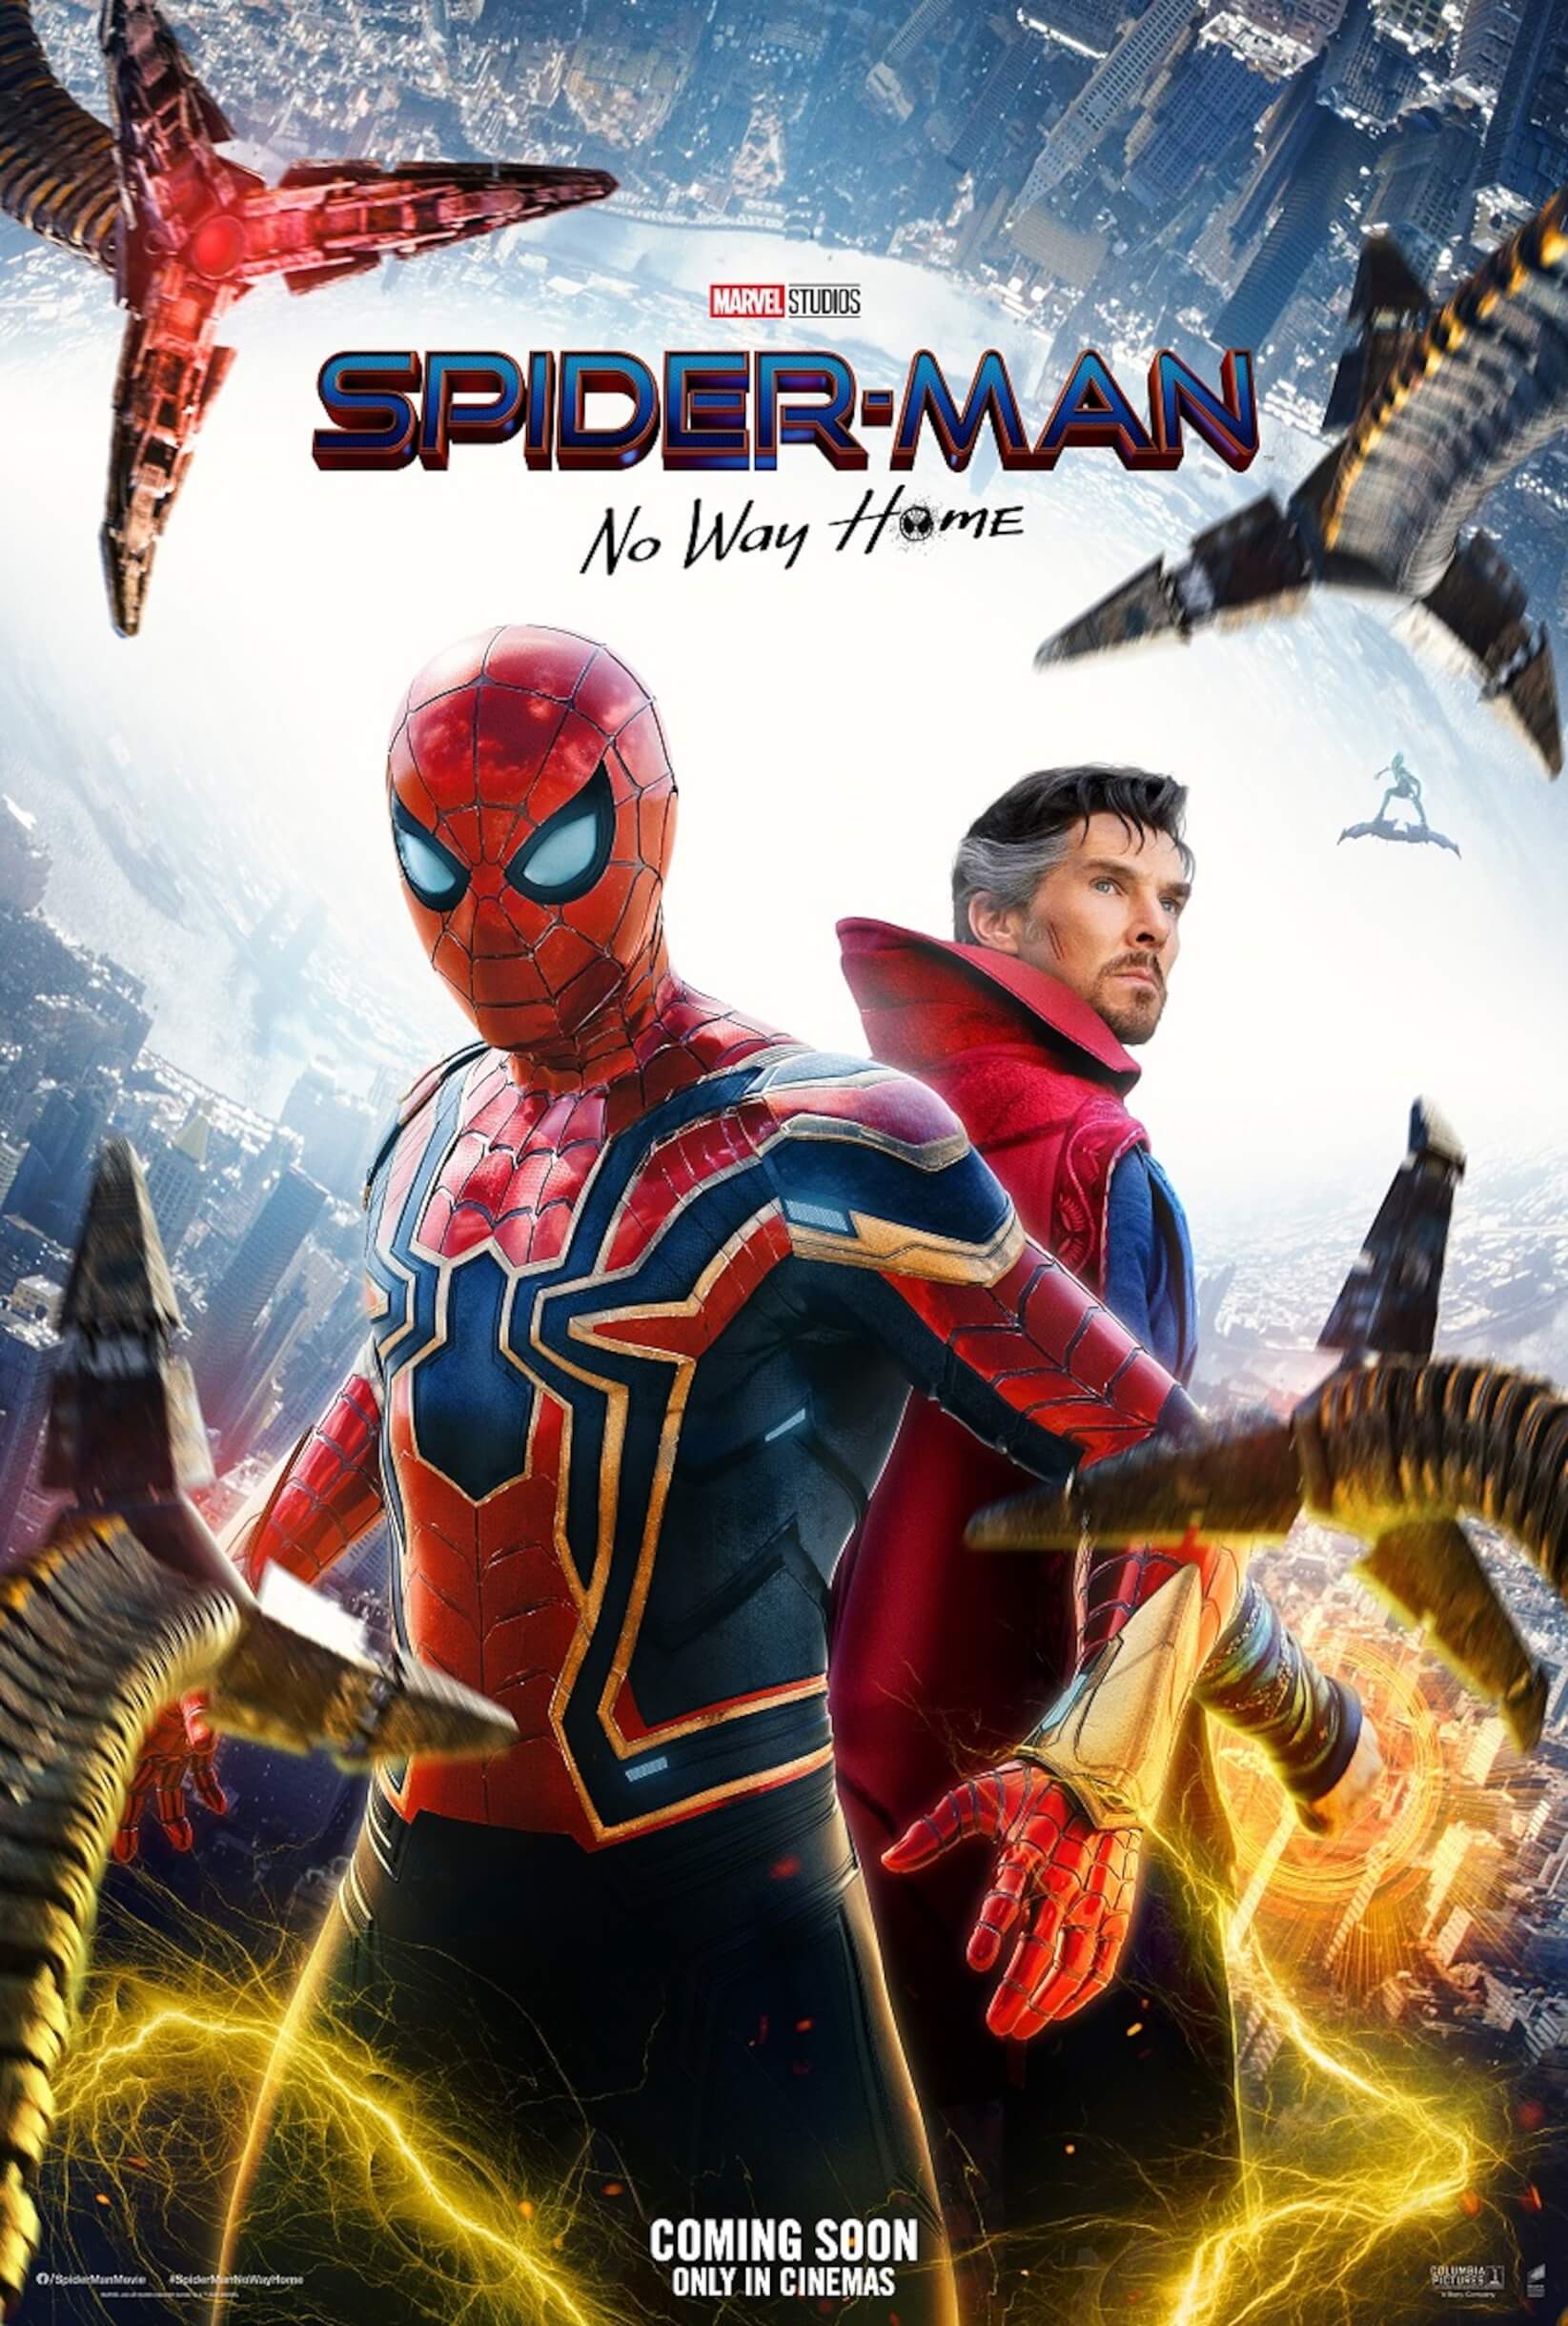 「みんながこれを見たら大はしゃぎしちゃうよ」『スパイダーマン：ノー・ウェイ・ホーム』の最新ポスターが解禁！第2弾予告も明日公開へ film211116_spiderman_nwh_main